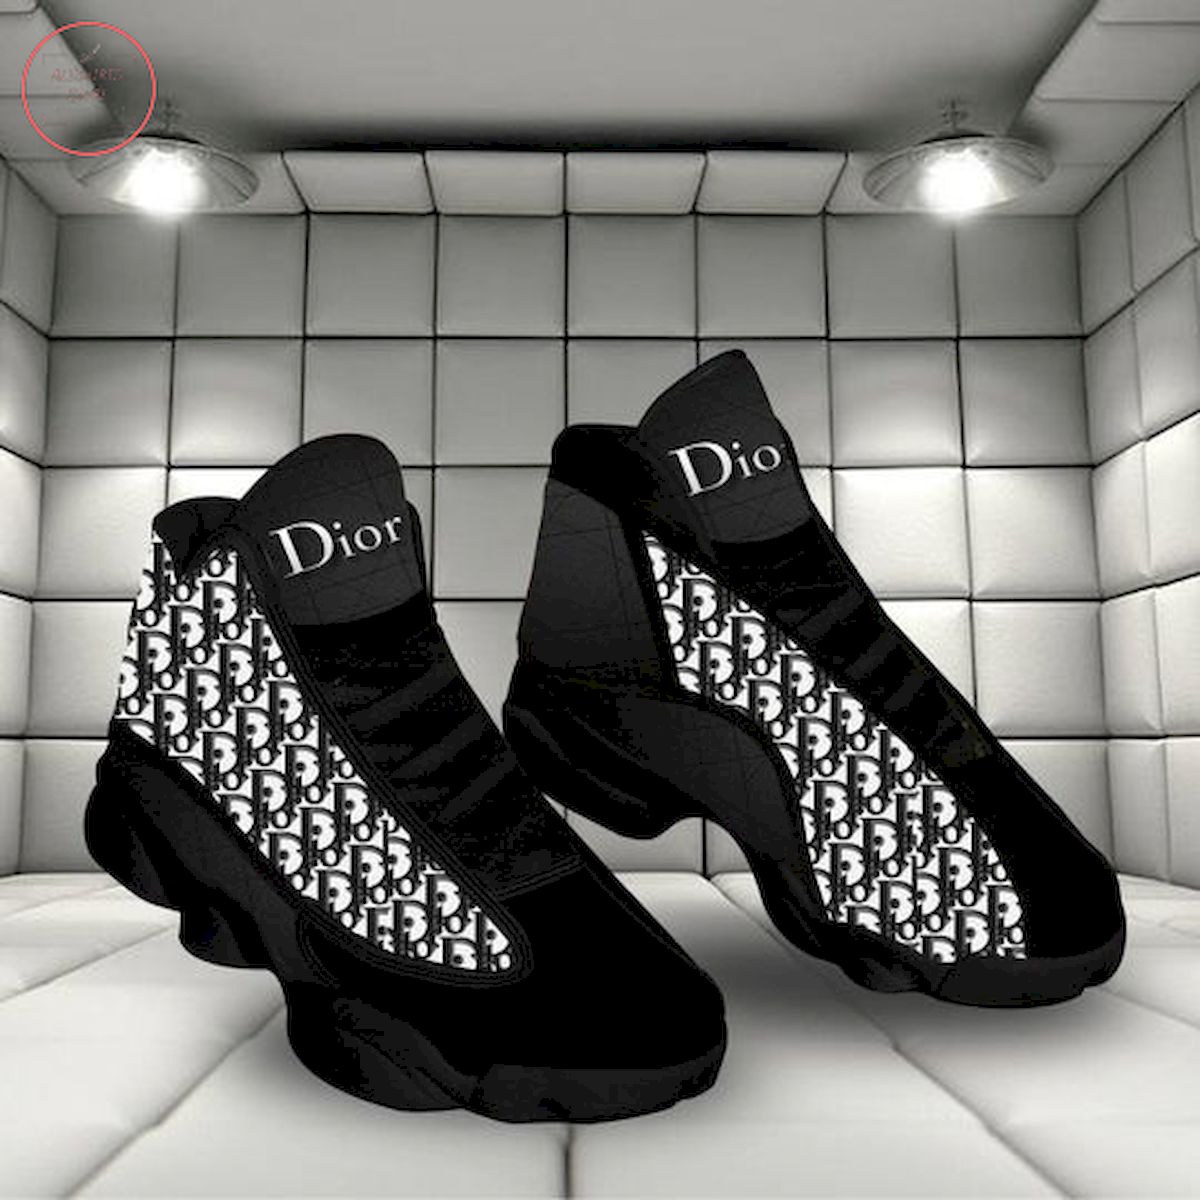 Dior Logo Black and White Air Jordan 13 Sneakers